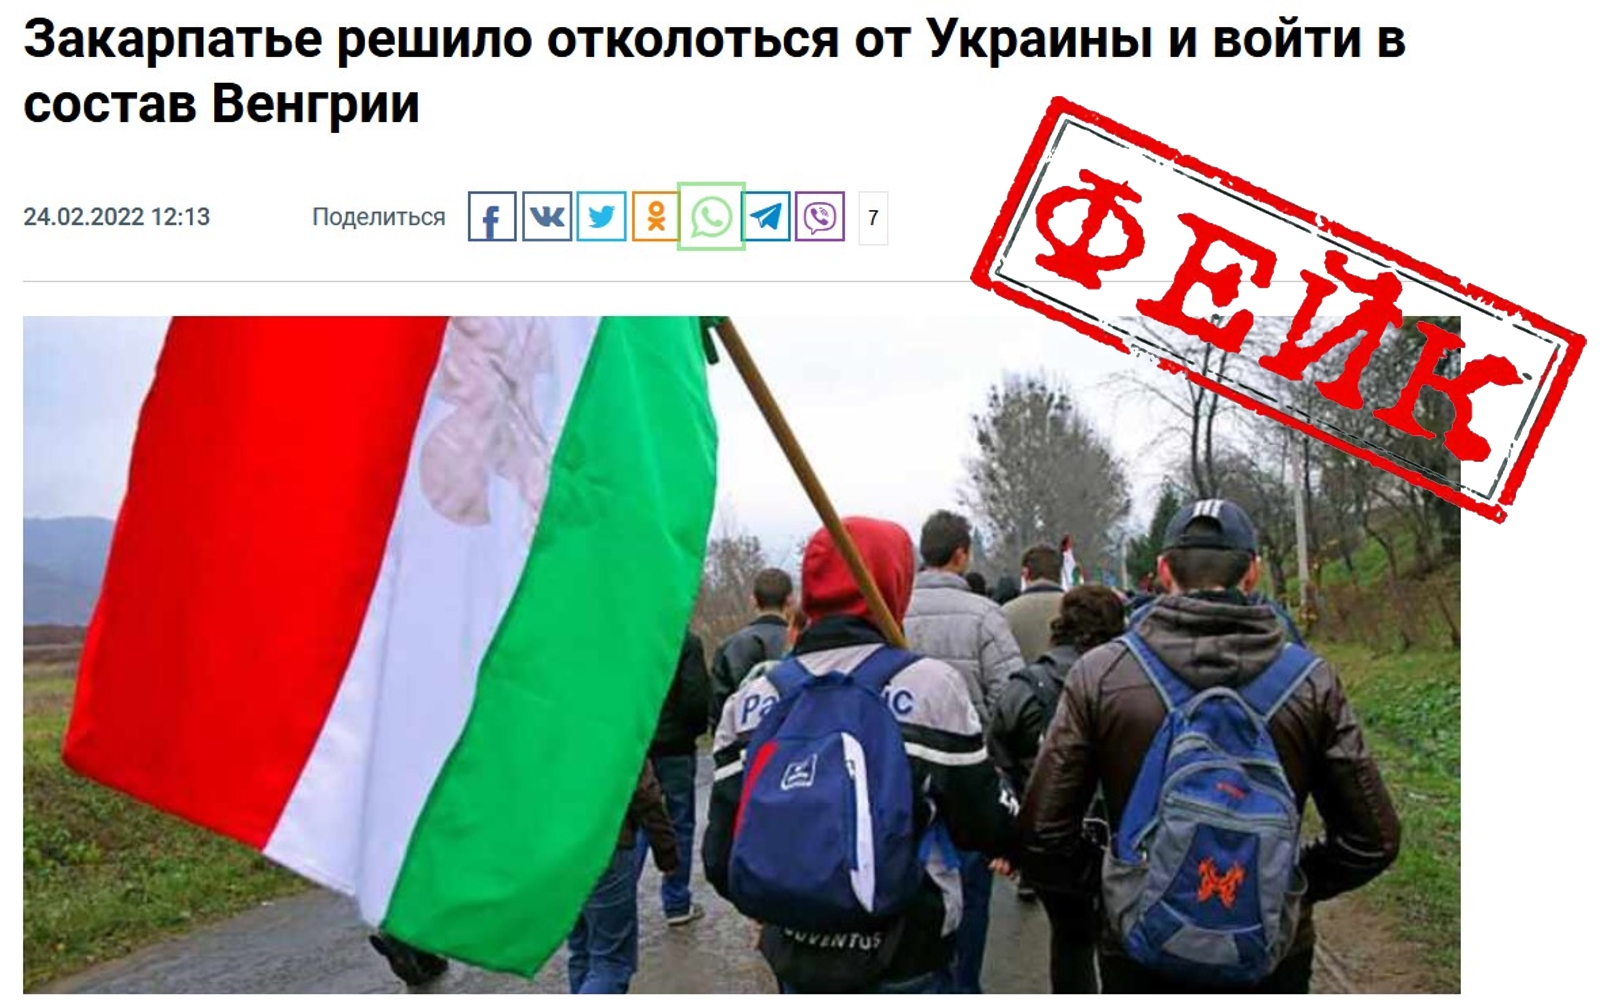 СМИ подхватили вброс о том, что украинские венгры собрались присоединяться к Венгрии